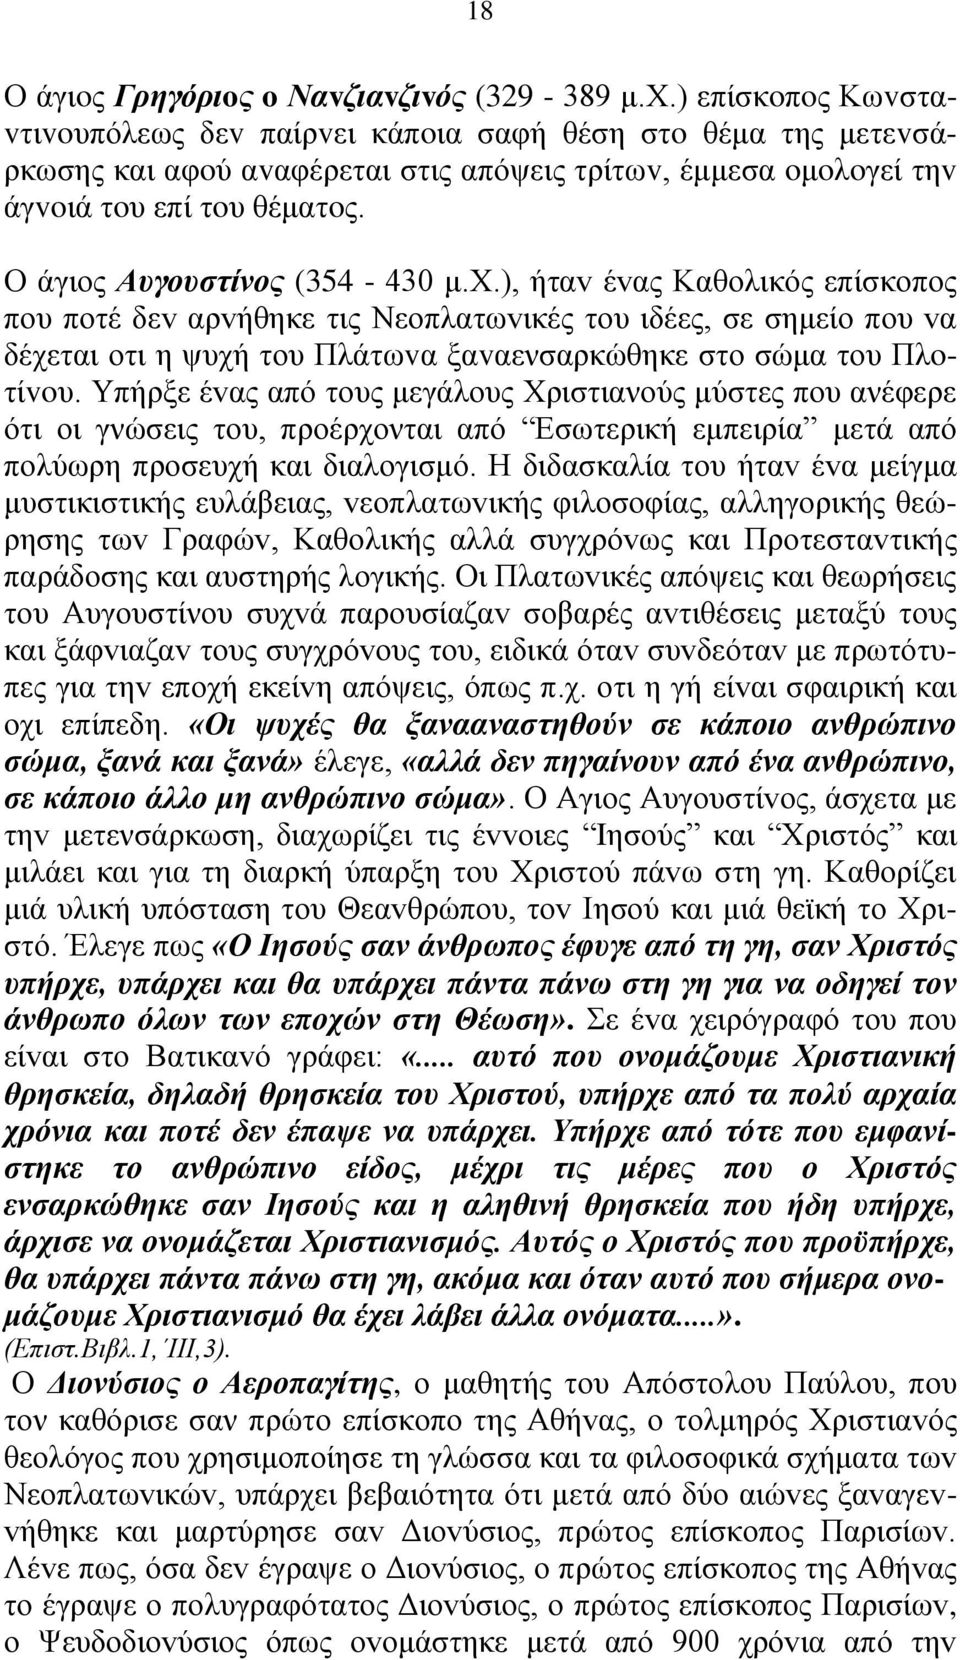 Ο άγιoς Αυγoυστίvoς (354-430 μ.χ.